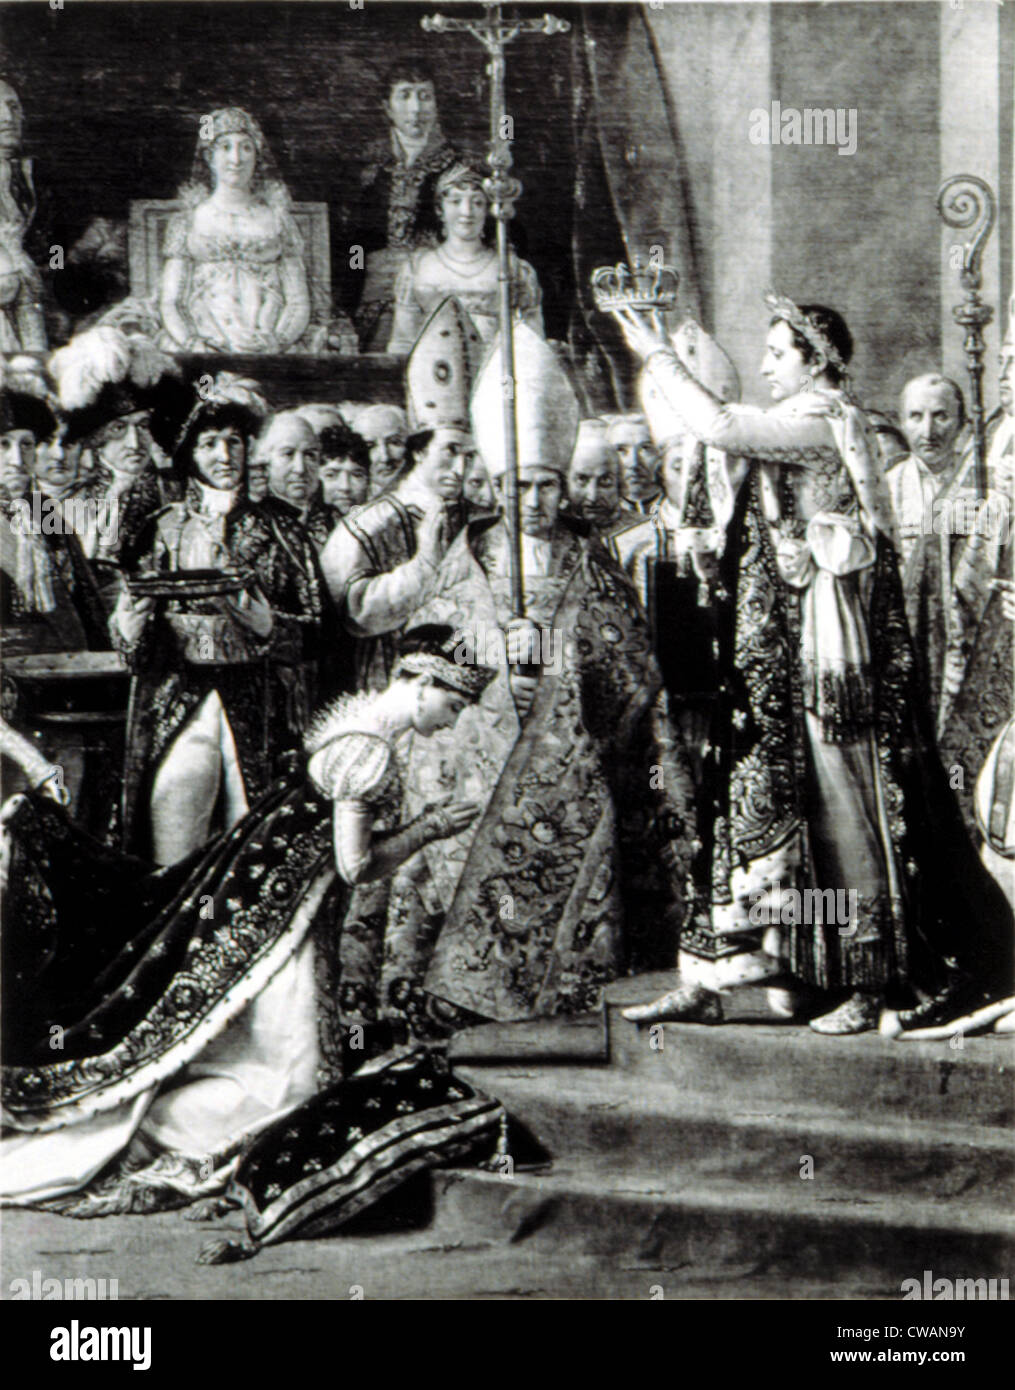 Napoléon Bonaparte (1769-1821)couronnement Joséphine impératrice de France, 12/2/1804. Détail de la peinture de David. Avec la permission de : CSU Banque D'Images